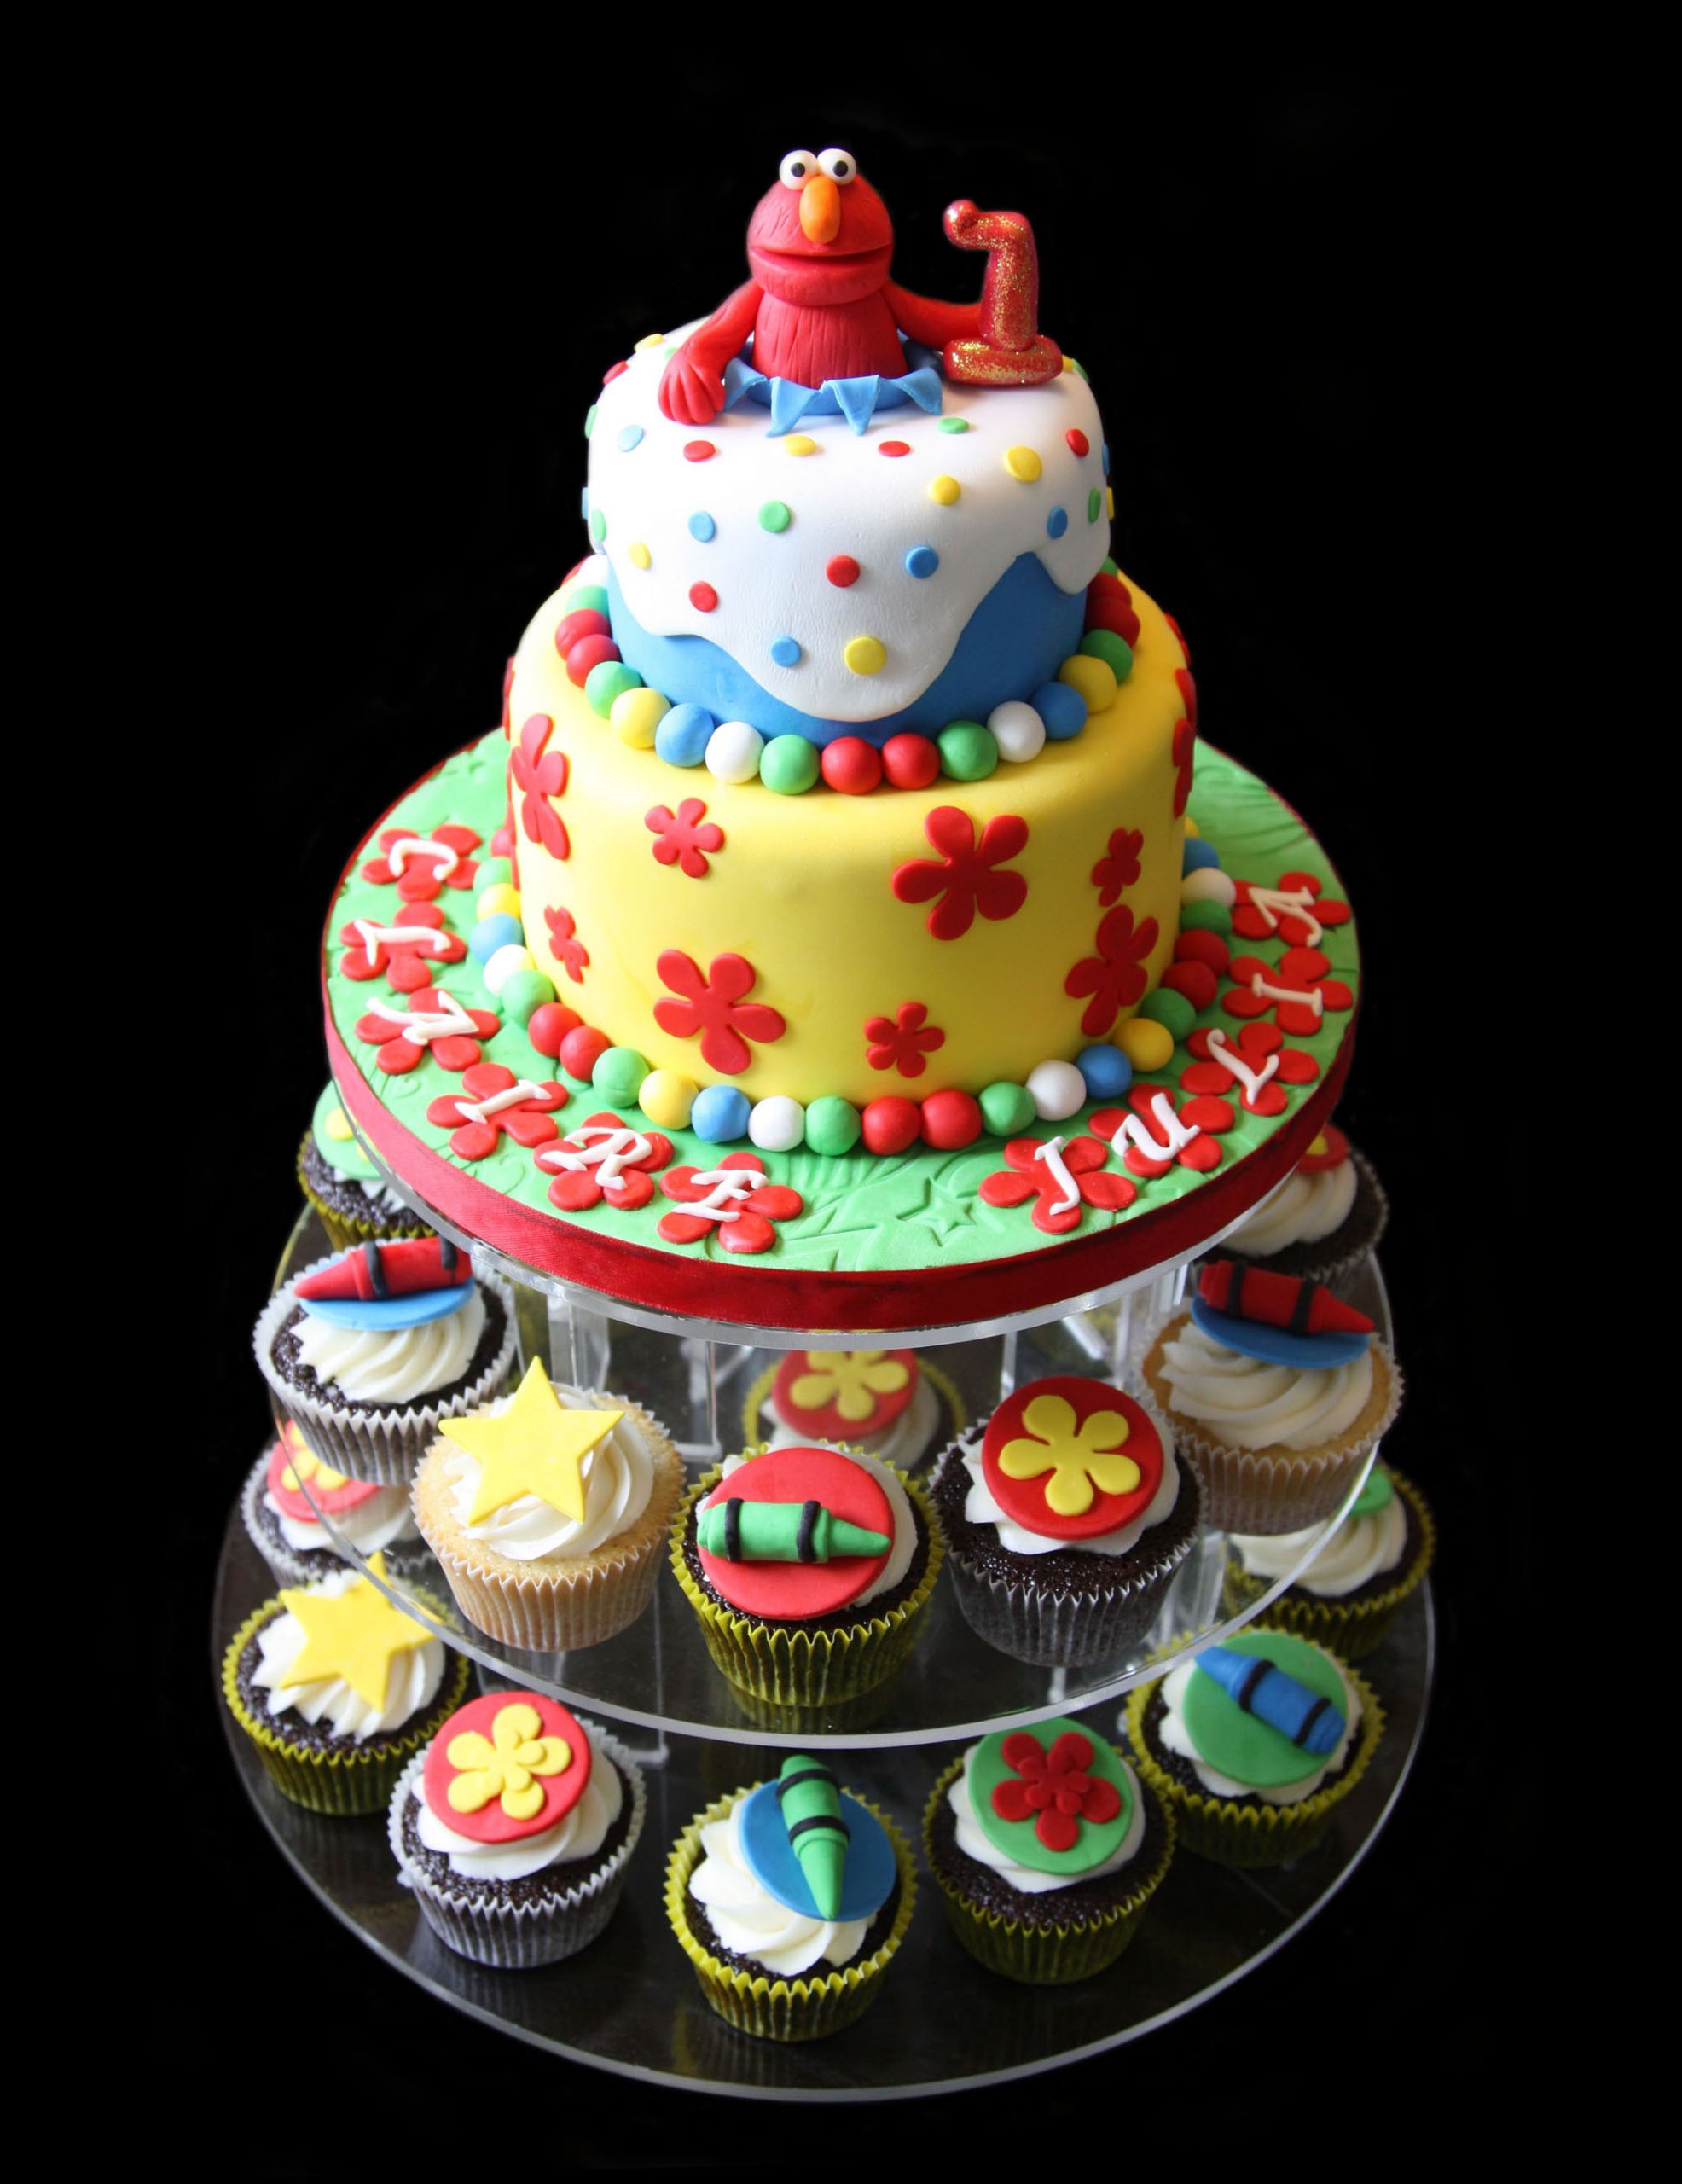 Custom Birthday Cakes
 SugarBabies Custom Birthday Cake Gallery